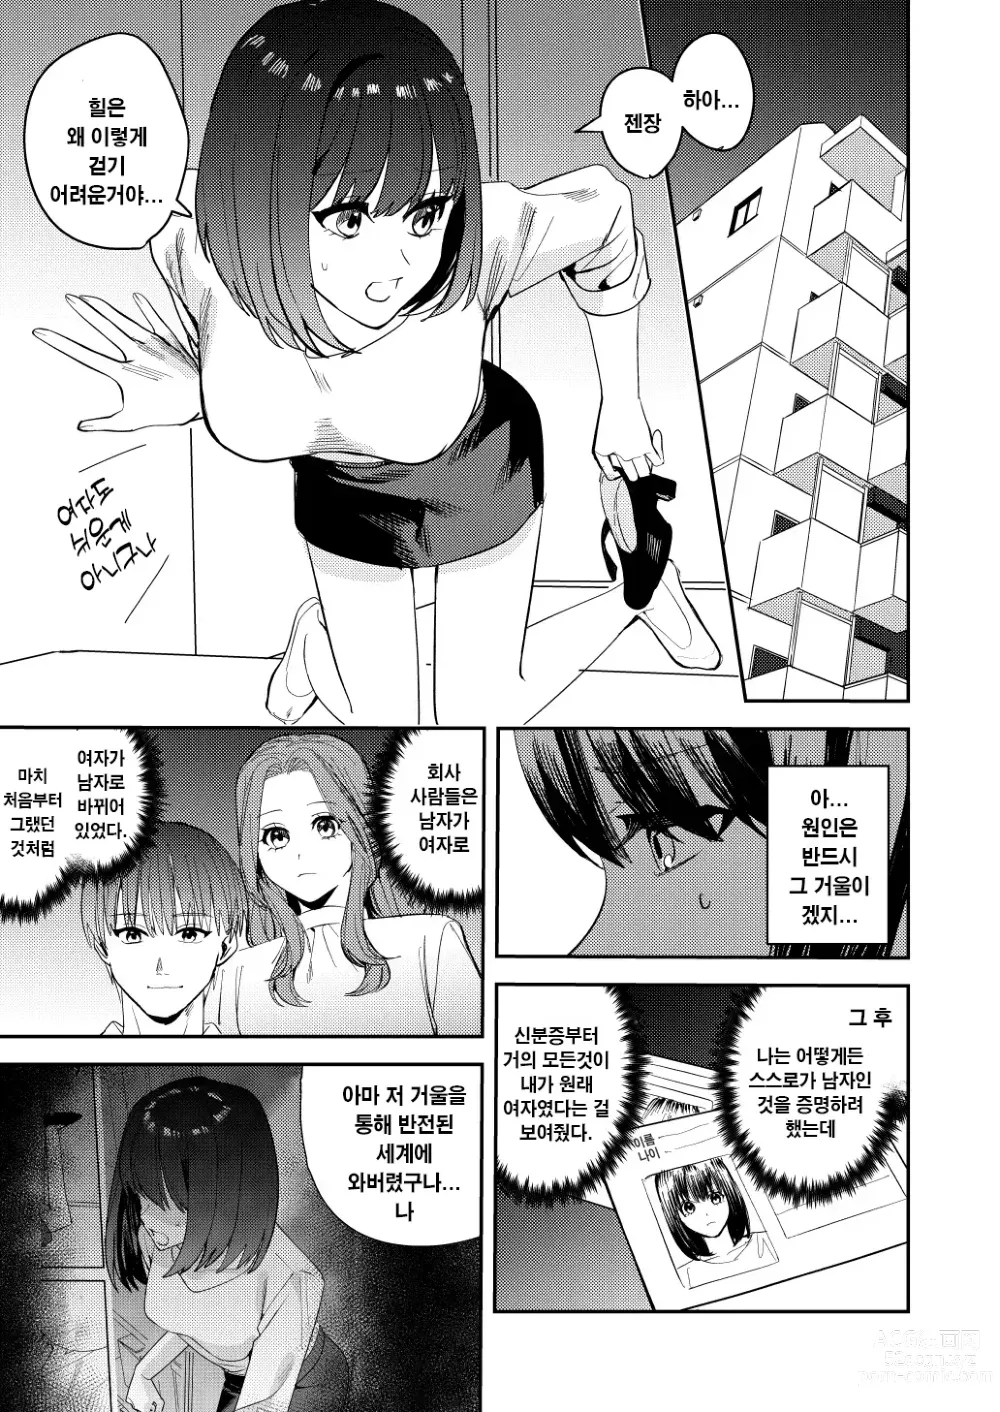 Page 10 of doujinshi 나는 거울의 나라에서 여자로 바뀐다 ~성별 반전 세계에서 여자의 쾌감을 탐하는 이야기~